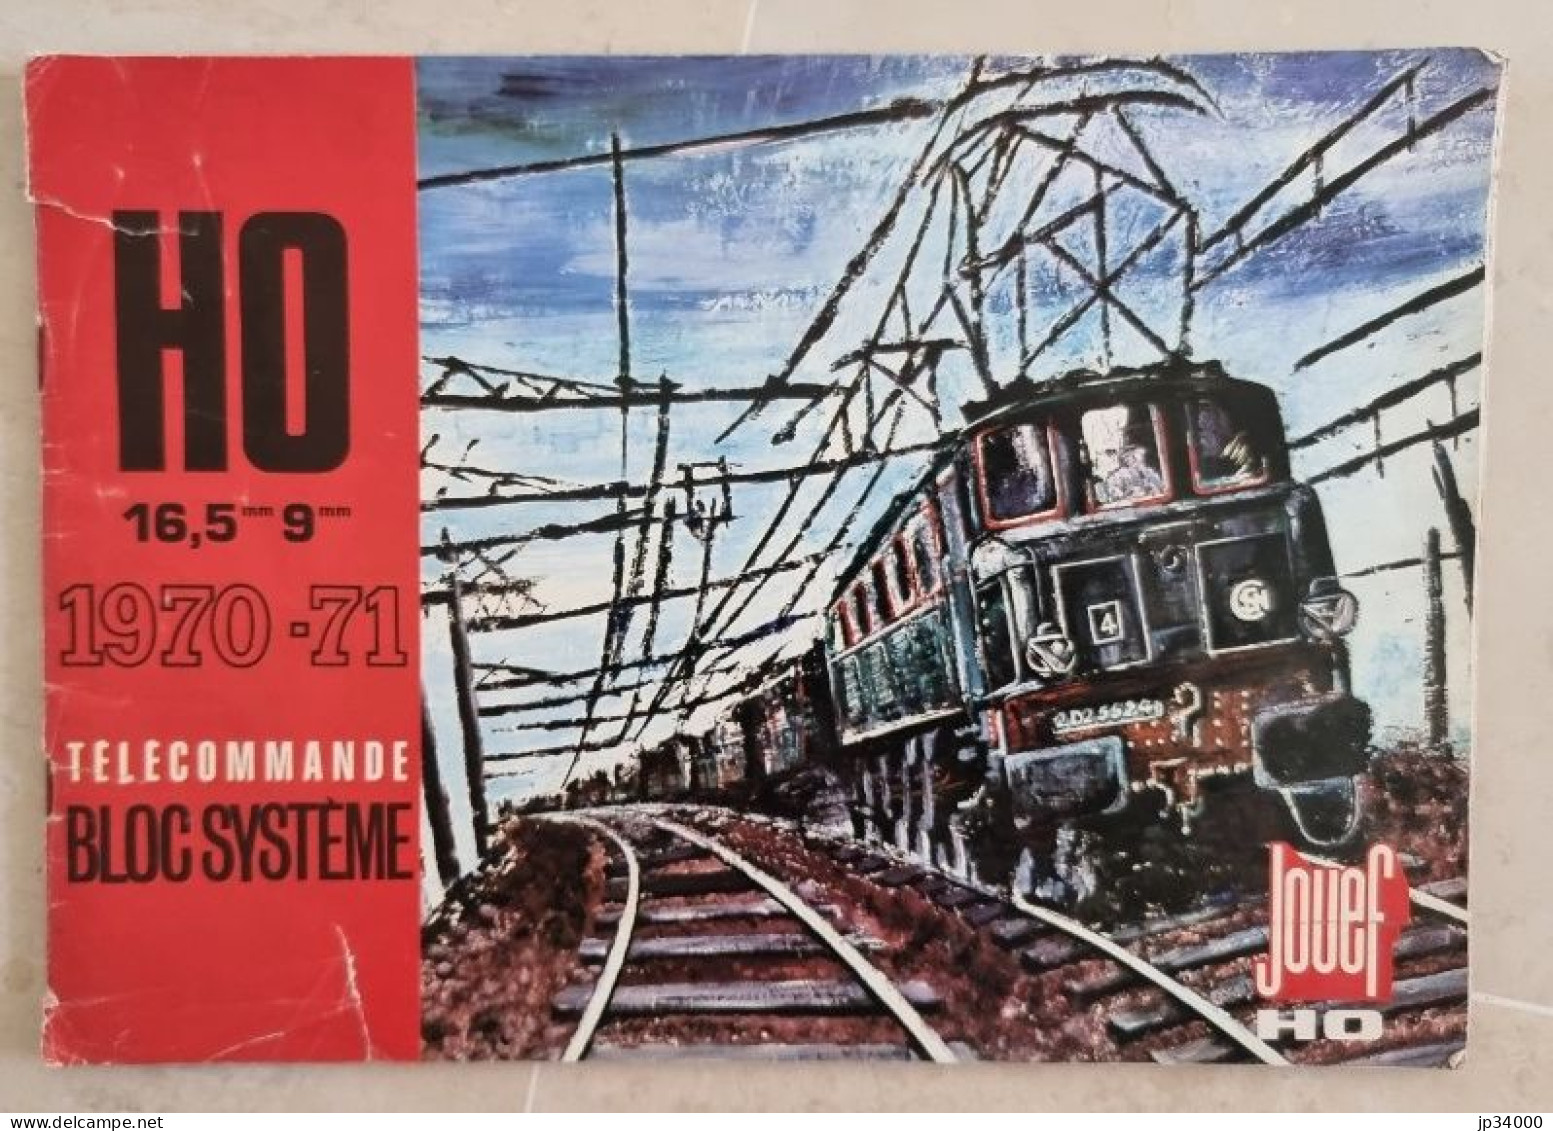 TELECOMMANDE BLOC SYSTEME (Jouef HO) Complet 40 Pages, 1970-71 (Trains électriques) - Littérature & DVD